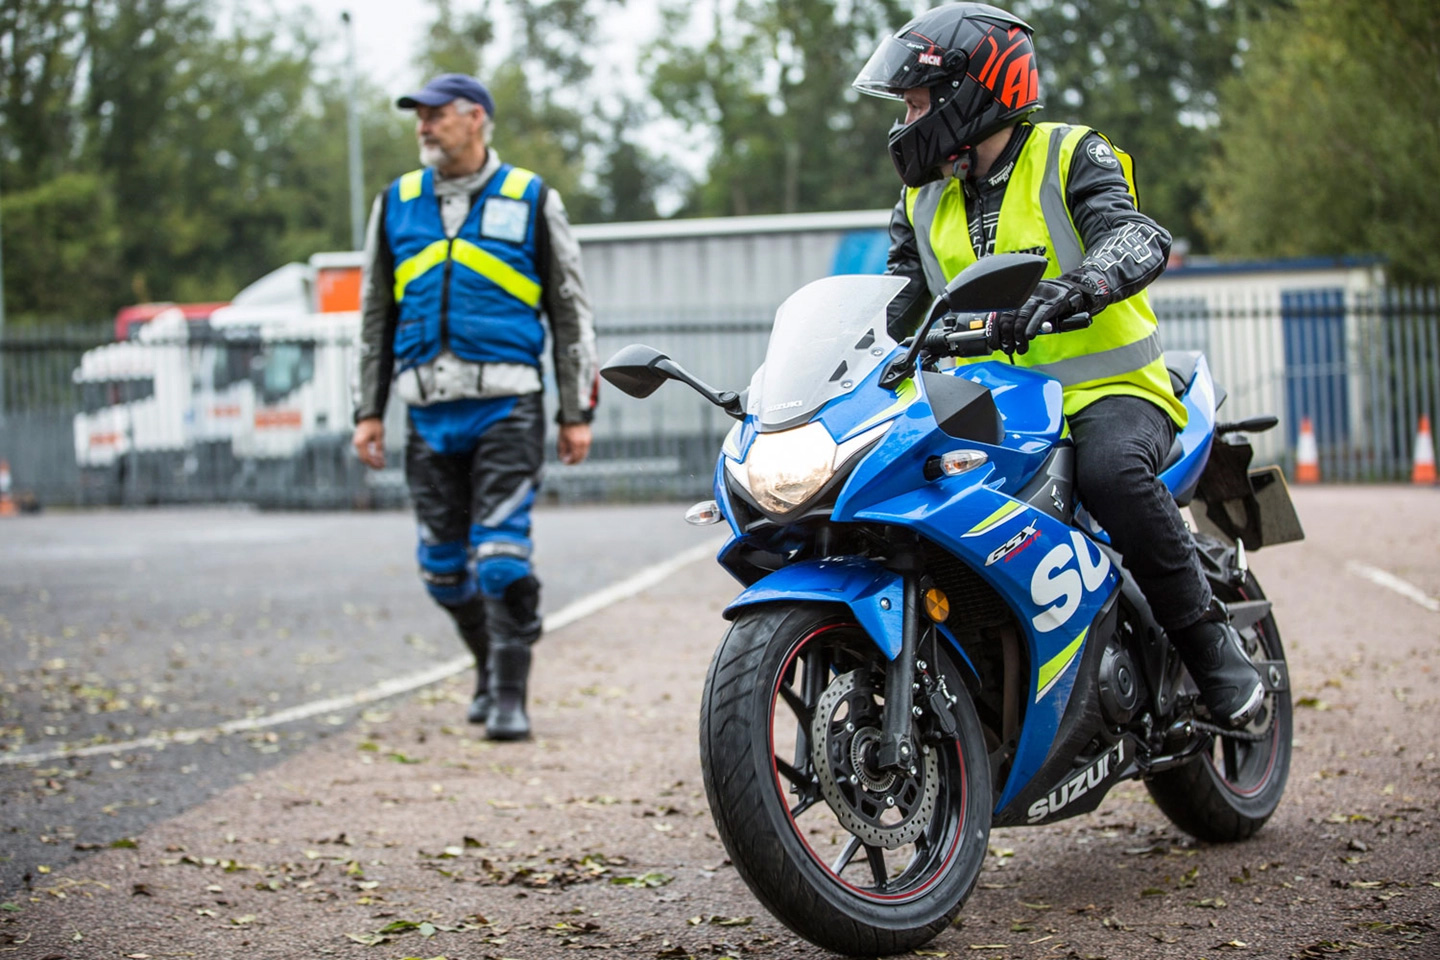 A Suzuki GSX Motorcycle rider undergoes training